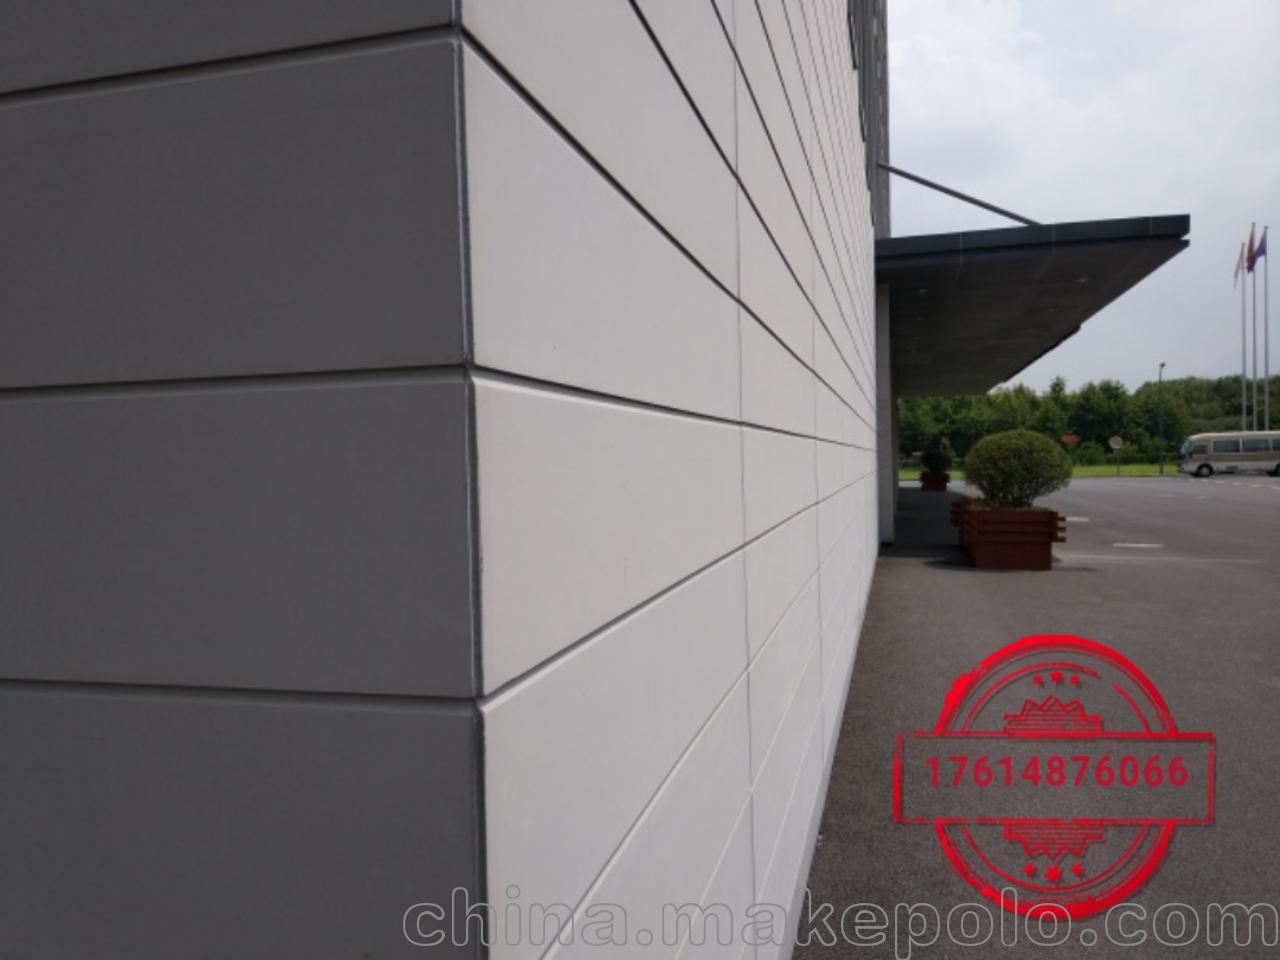 ktc外墙板系列增强纤维水泥压力板,外墙装饰挂板施工快工期短